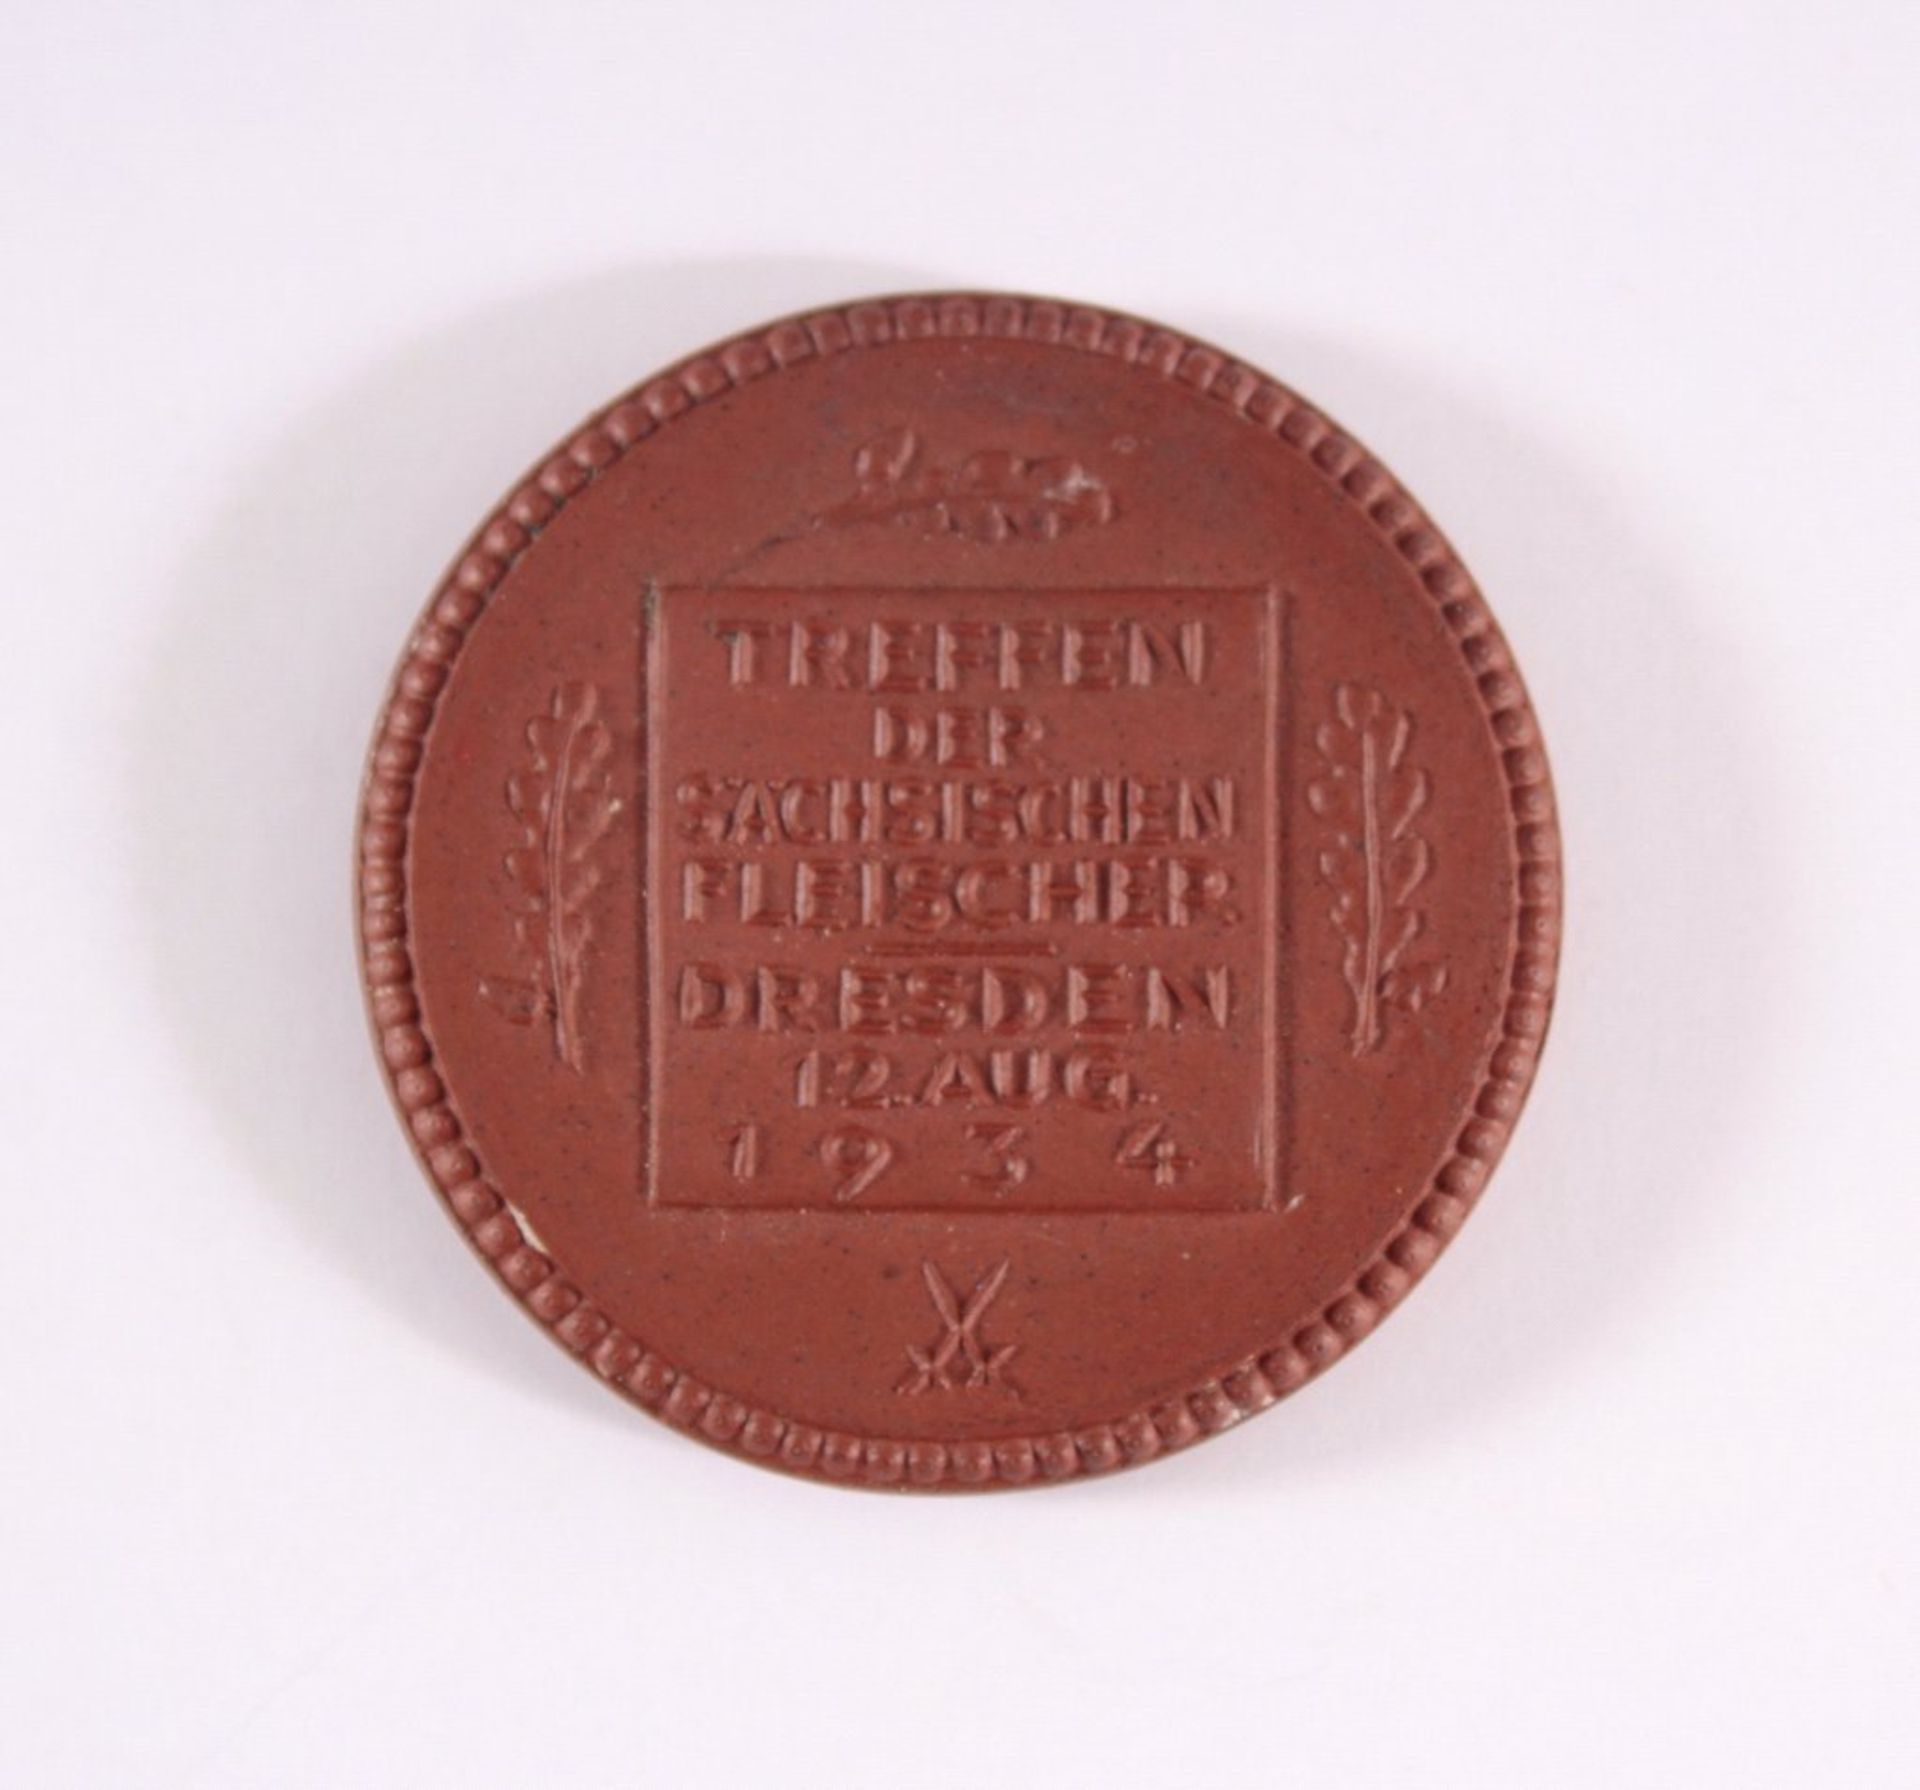 Steinzeug Medaille DAF RGBI 1934 DresdenTreffen der Sächsischen Fleischer, ca. D- 3,8 cm - Bild 2 aus 2